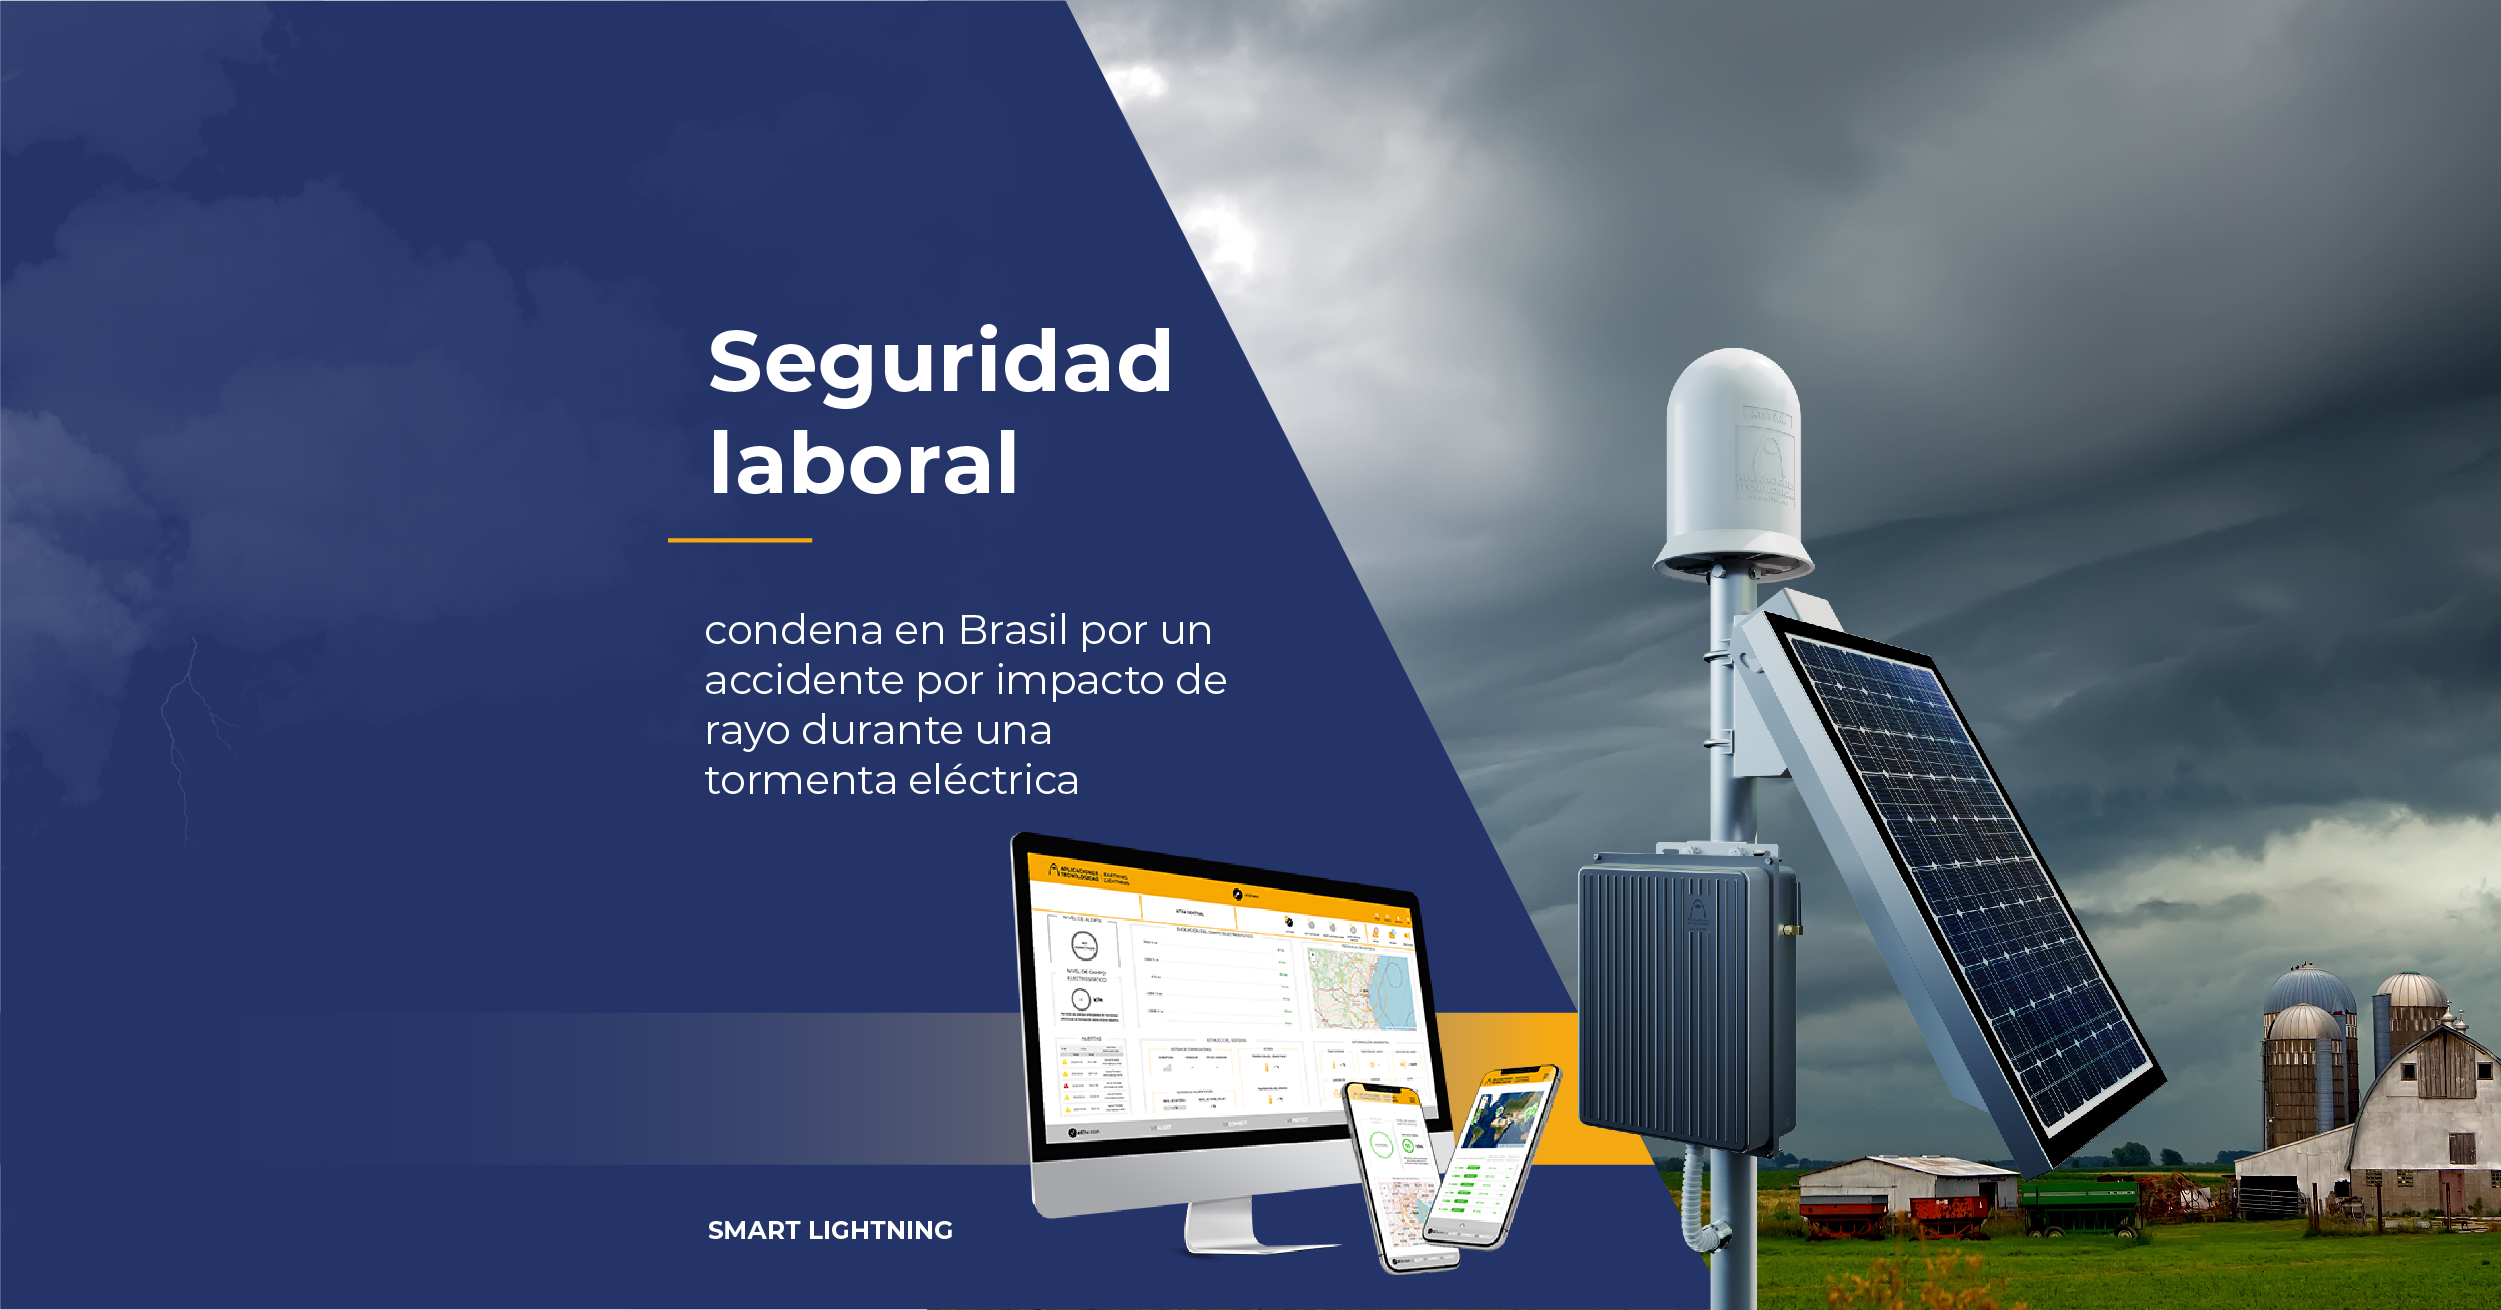 seguridad-laboral-condena-brasil-accidente-laboral-impacto-de-rayo-tormenta-electrica